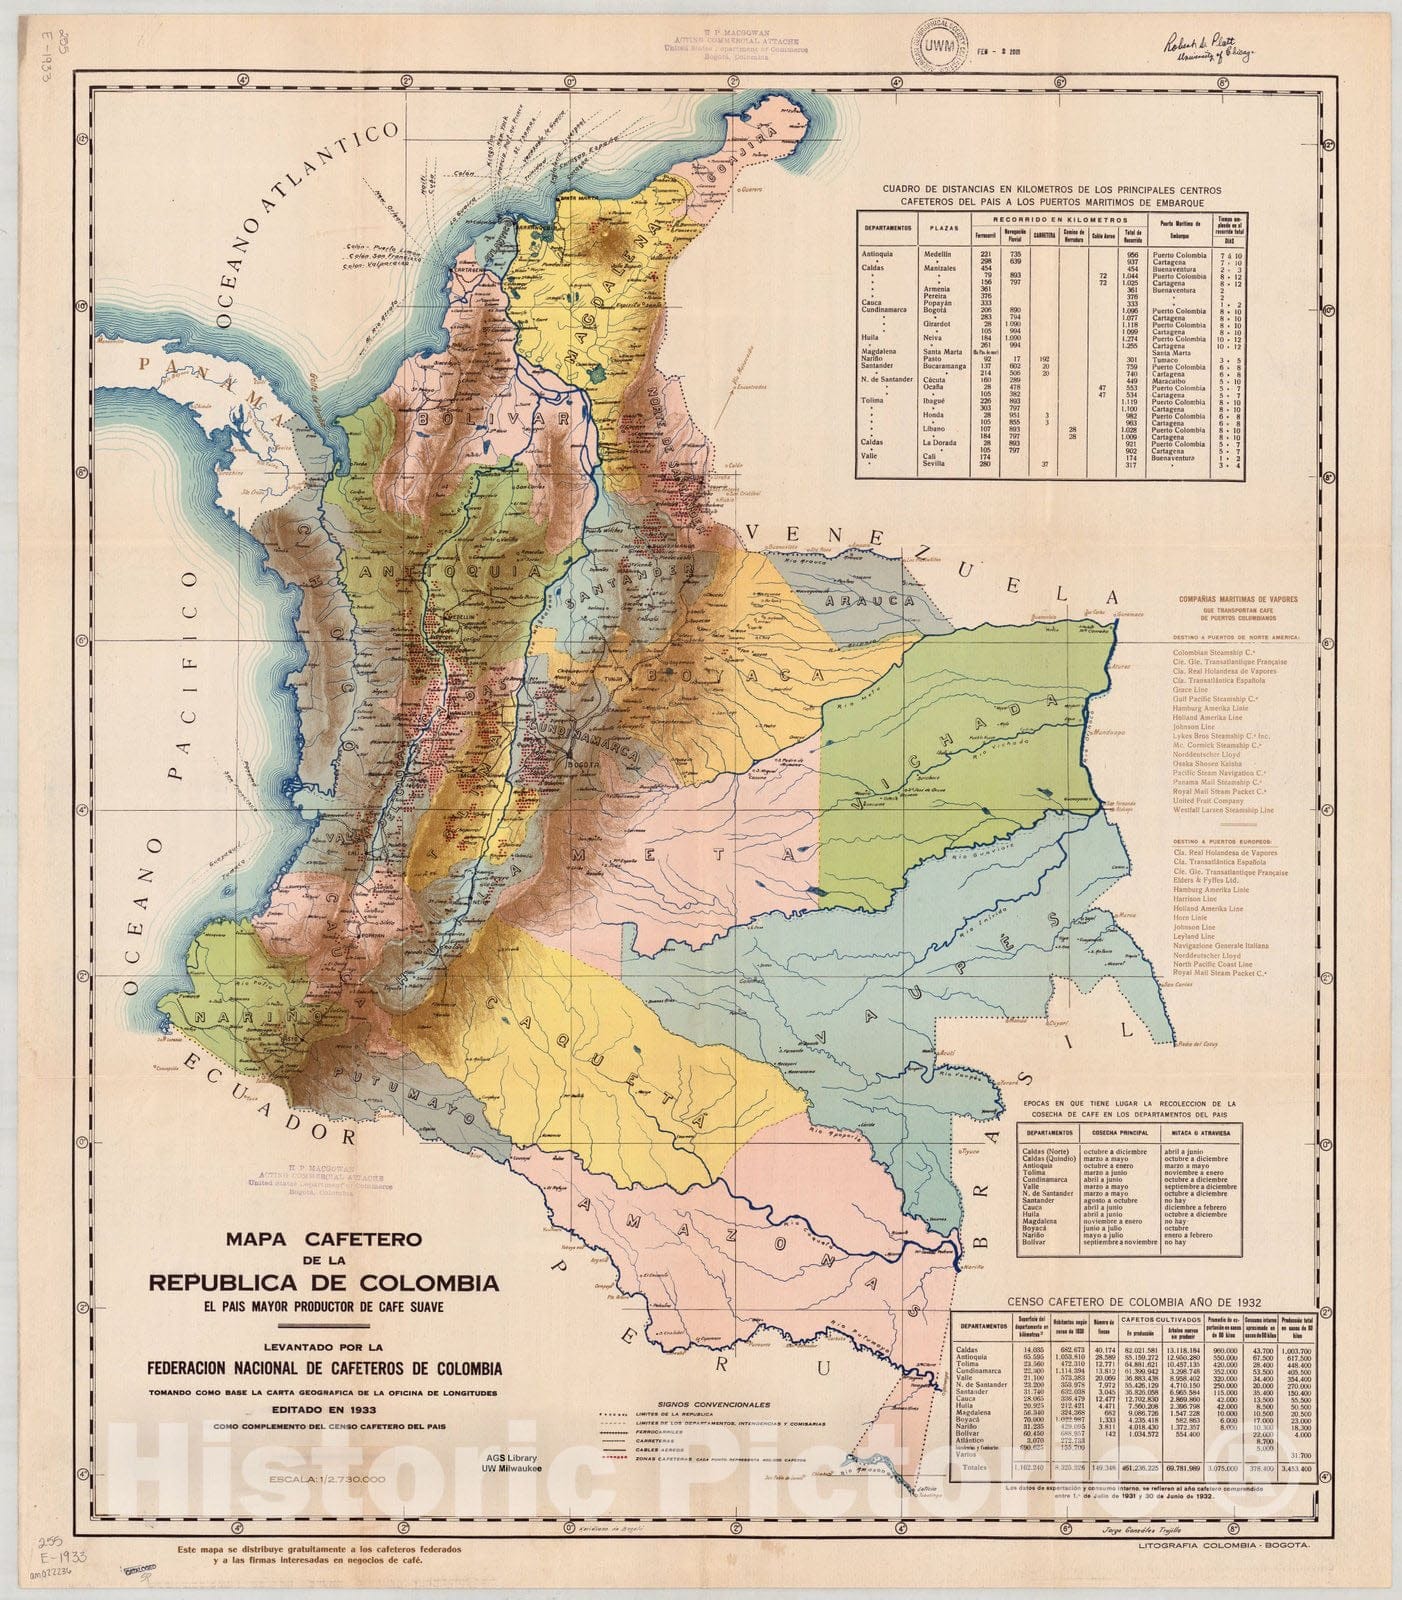 Map : Colombia 1933, Mapa cafetero de la Republica de Colombia : el pais mayor productor de cafe suave , Antique Vintage Reproduction